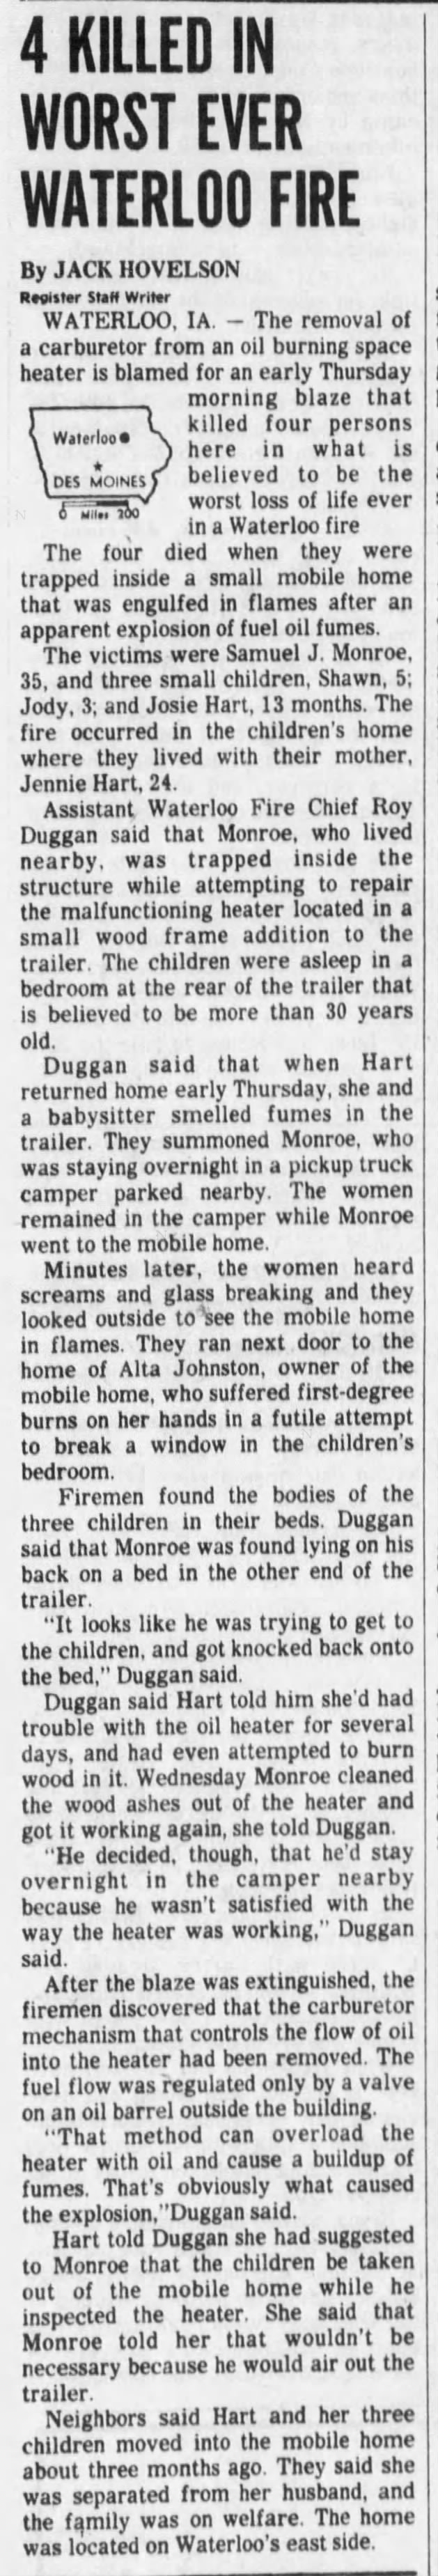 Fire of Hart Children, Waterloo IA
The DesMoines Register Oct 29, 1976 pg 3